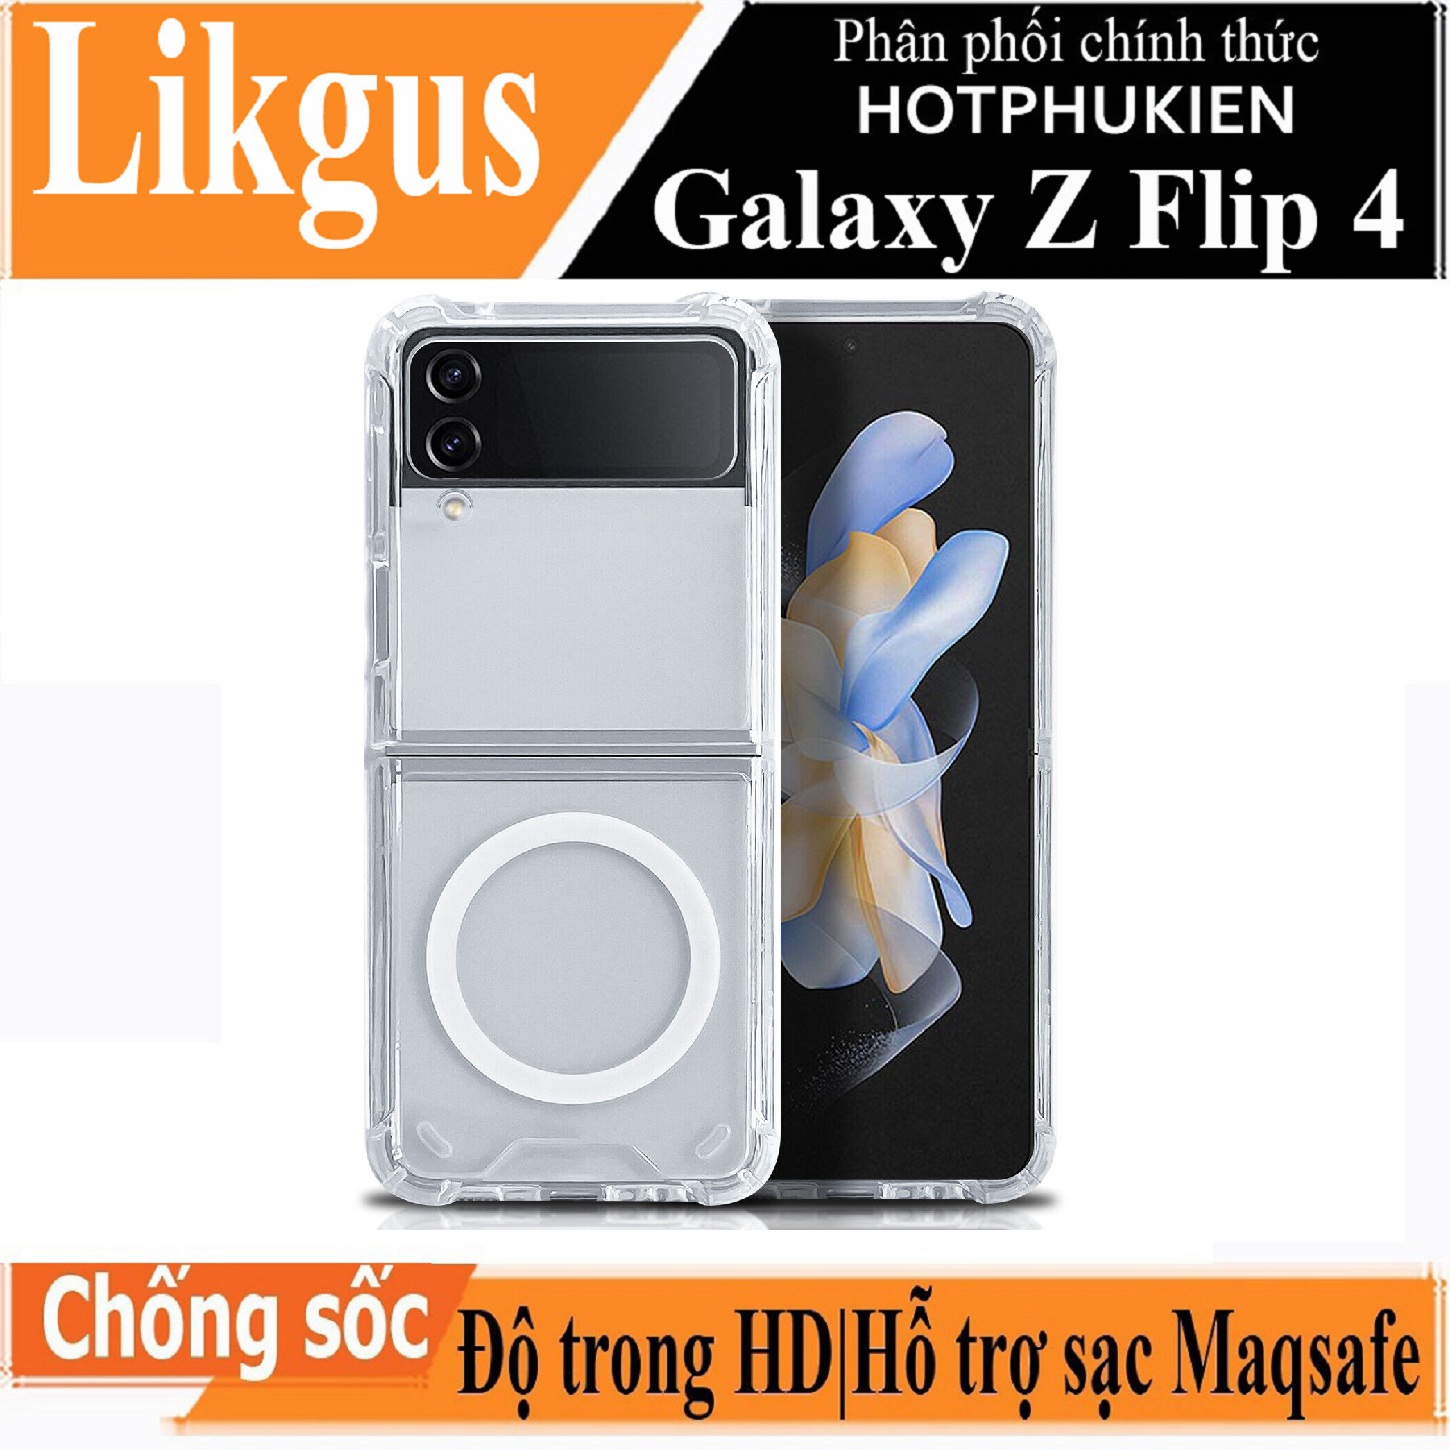 Ốp lưng chống sốc trong suốt hỗ trợ sạc Magsafe cho Samsung Galaxy Z Flip 4 hiệu Likgus Magsafe Magetic Case siêu mỏng 1.5mm, độ trong tuyệt đối, chống trầy xước, chống ố vàng, tản nhiệt tốt